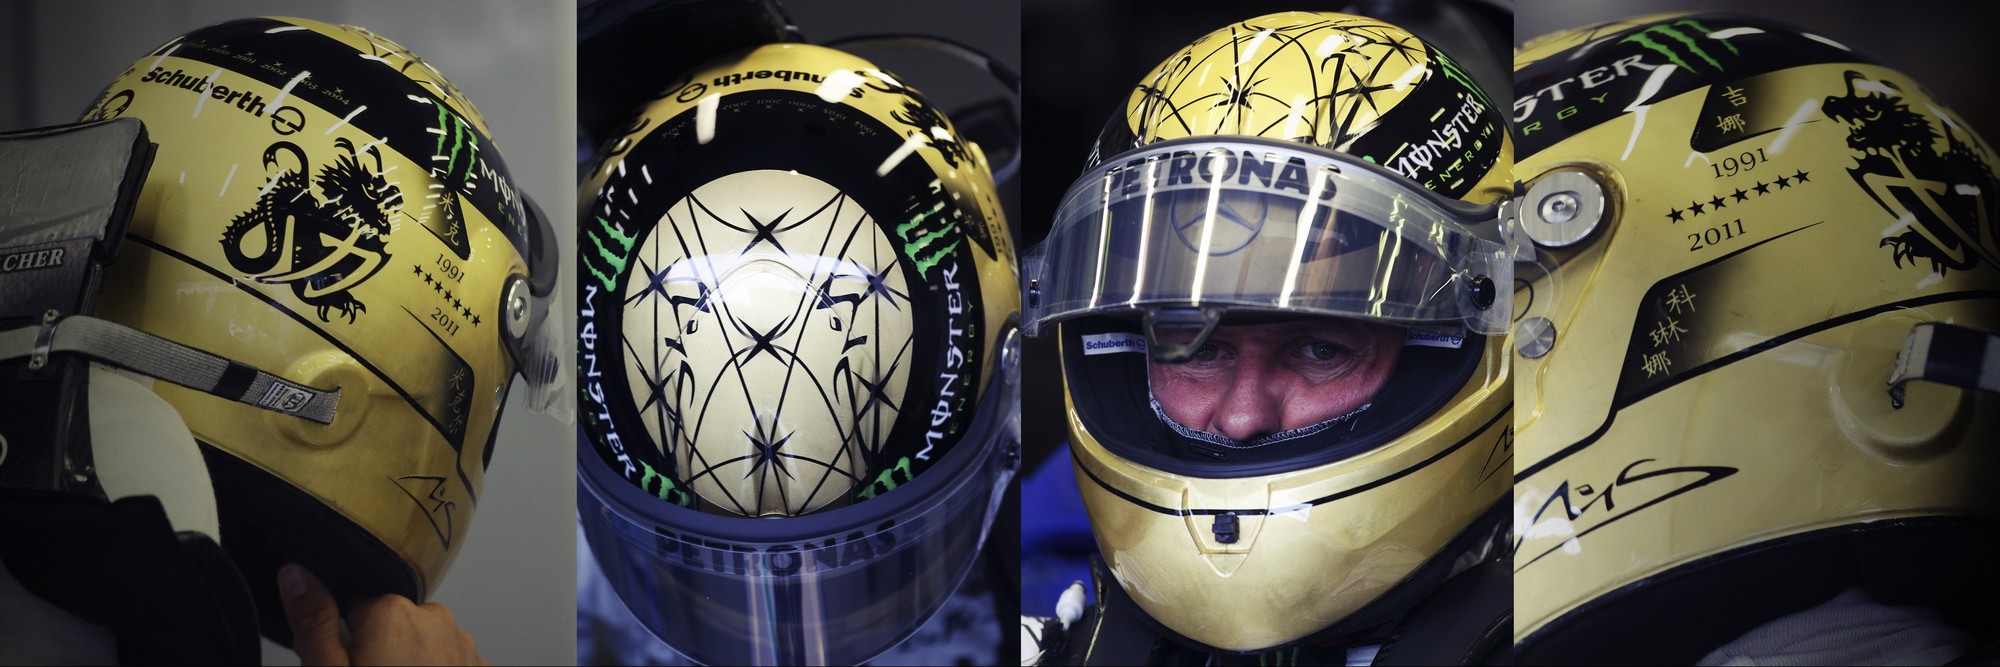 Шлем Михаэля Шумахера на Гран-При Бельгии 2011 года | 2011 Belgian Grand Prix helmet of Michael Schumacher